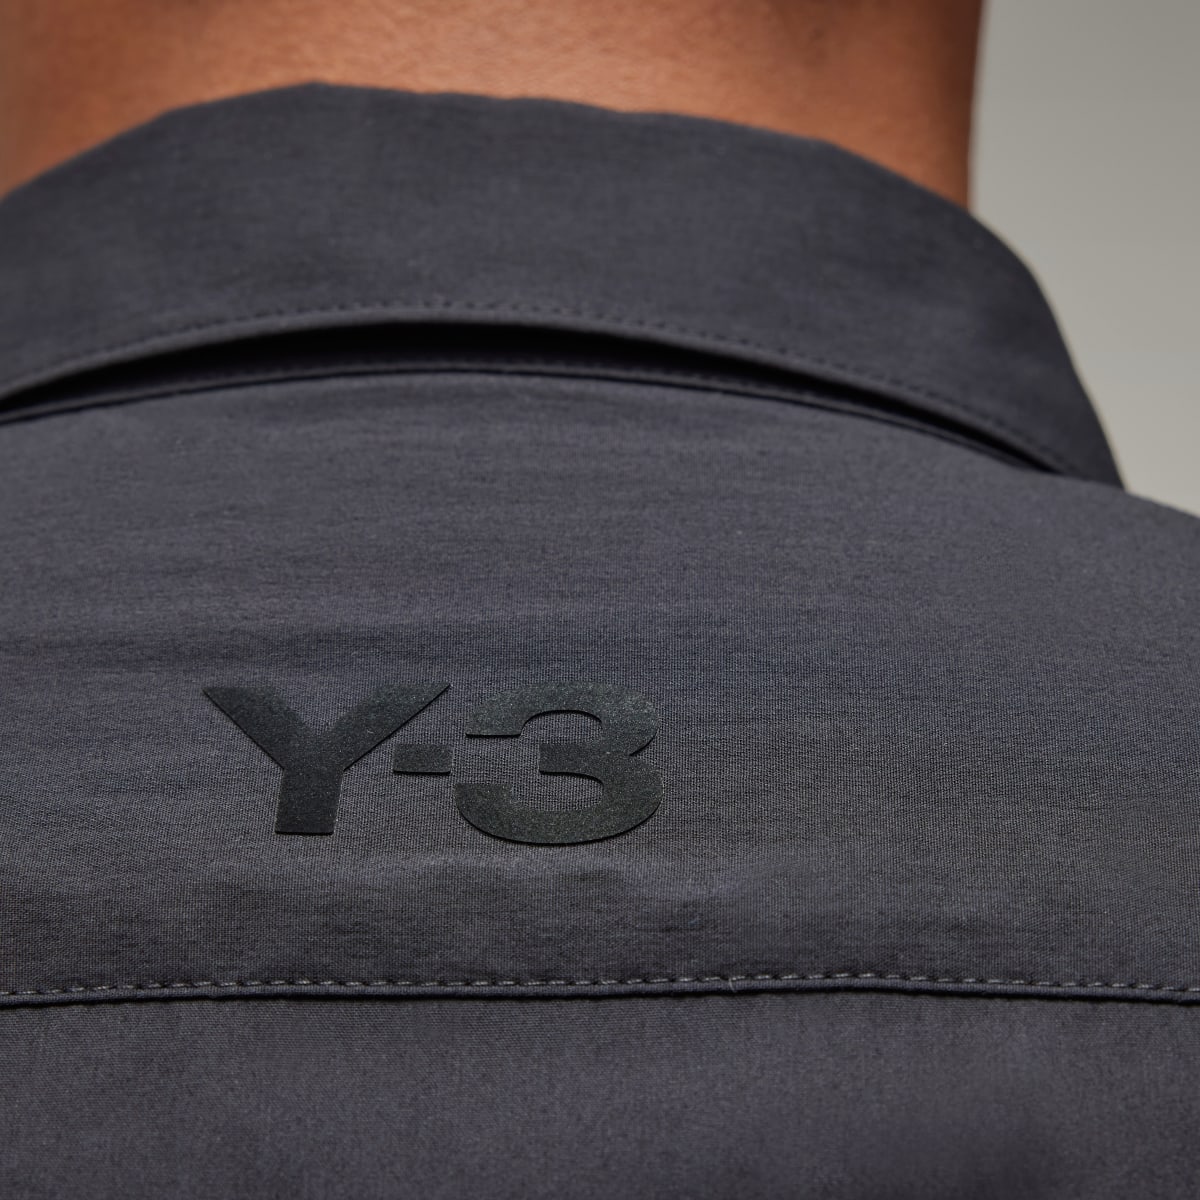 Adidas Y-3 Shirt. 6